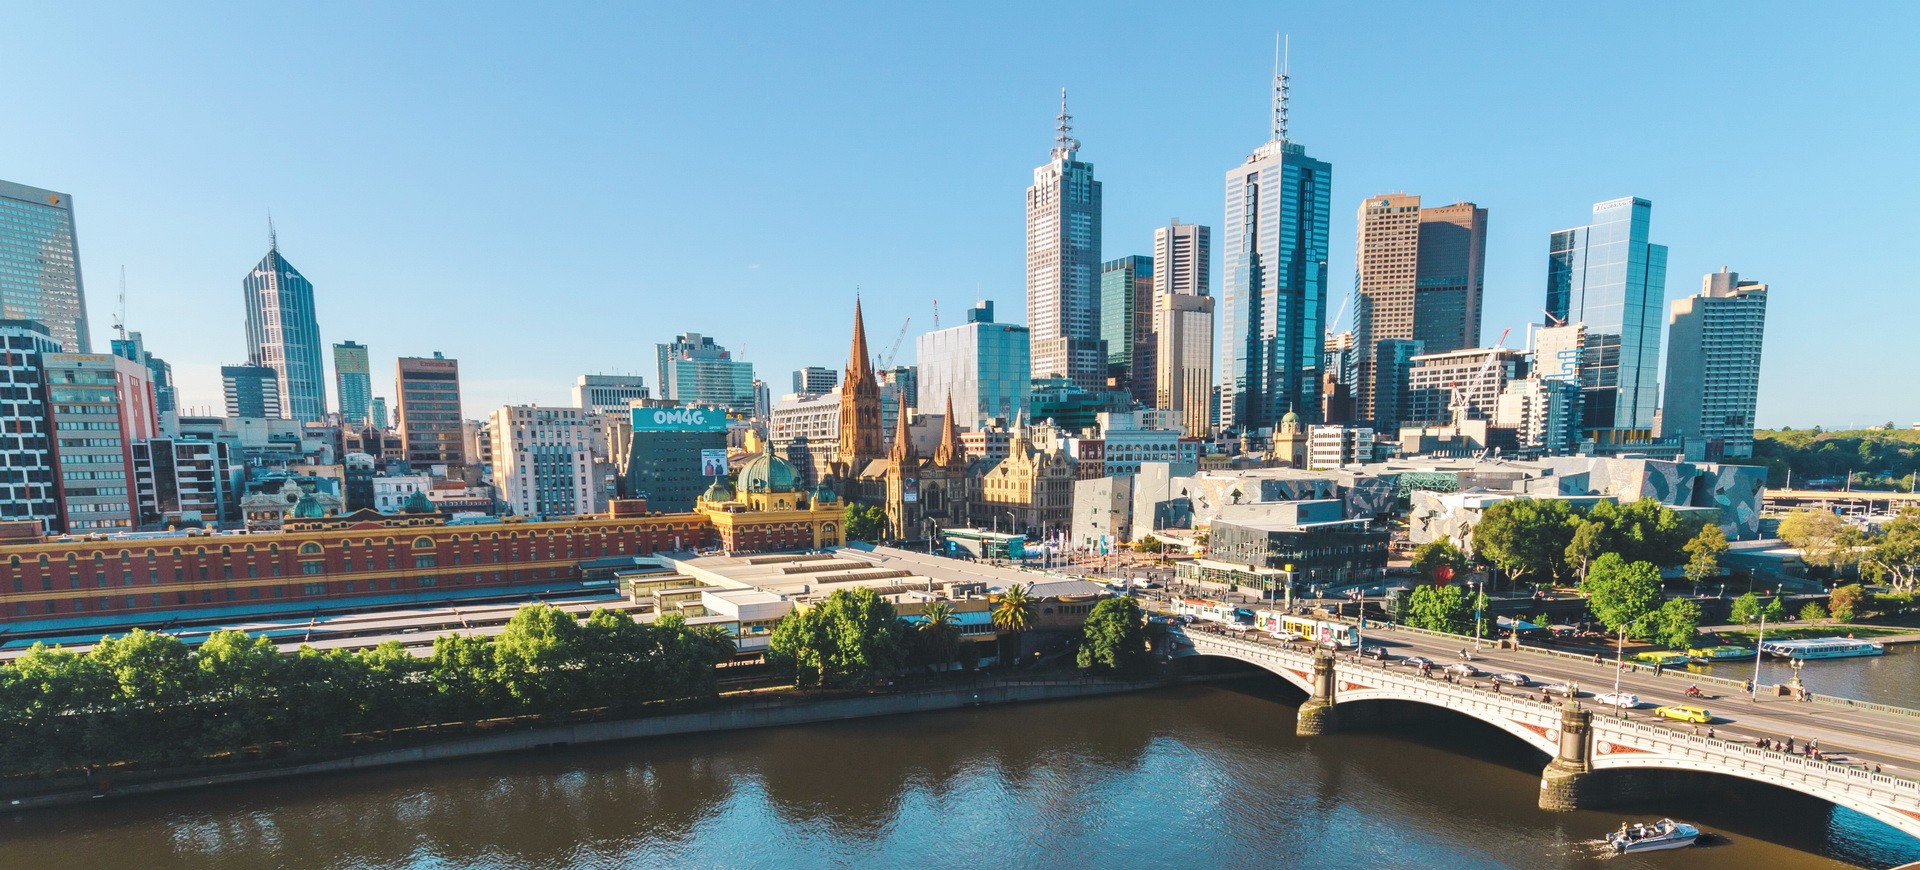 Australie Melbourne Flinders Street Station & River Yarra & City Skyline